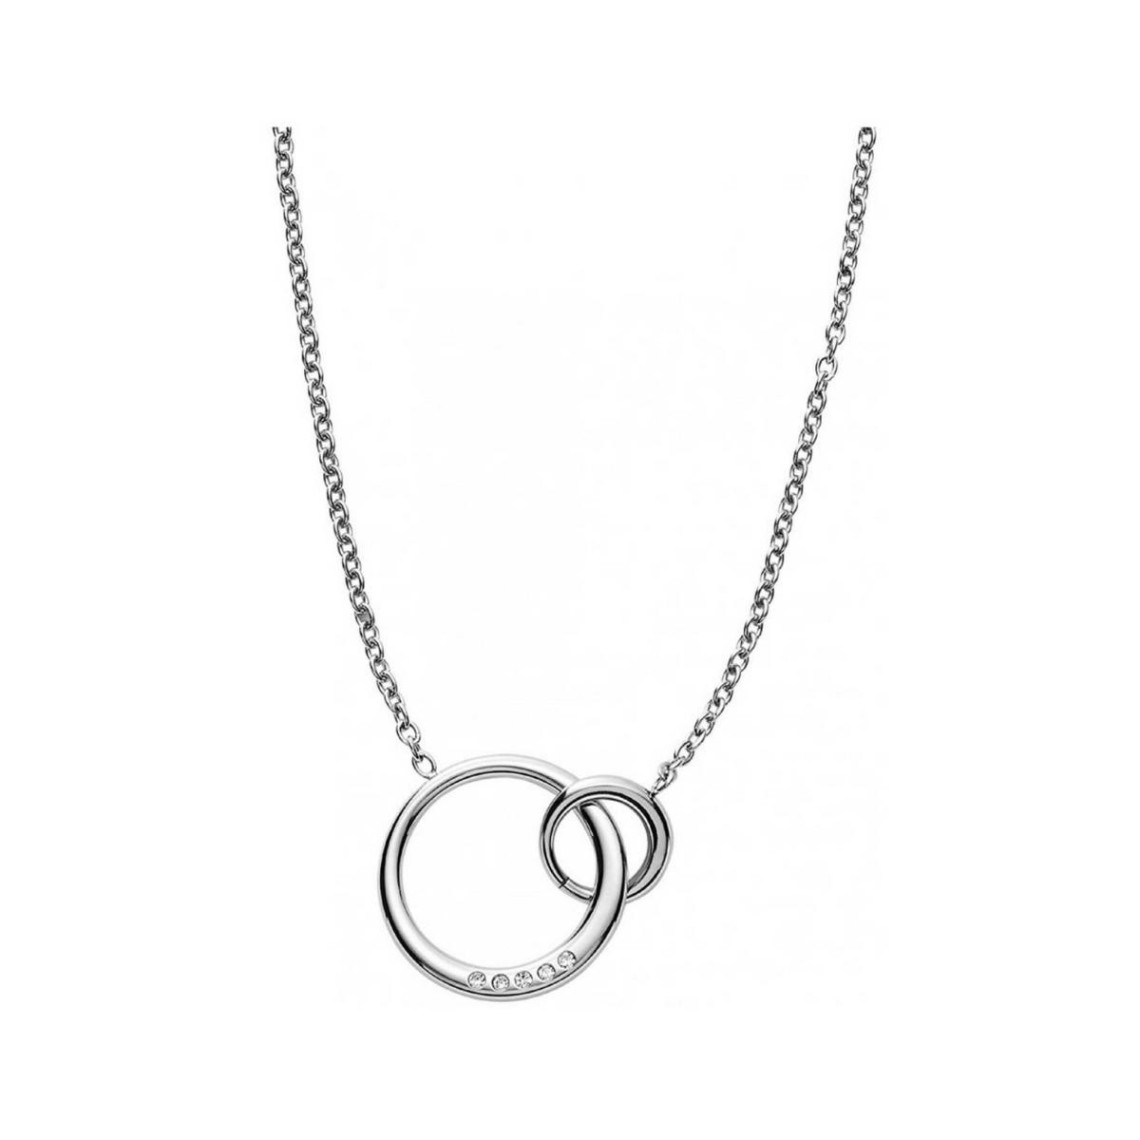 collier et pendentif skagen skj1053040 - collier argenté double anneaux femme